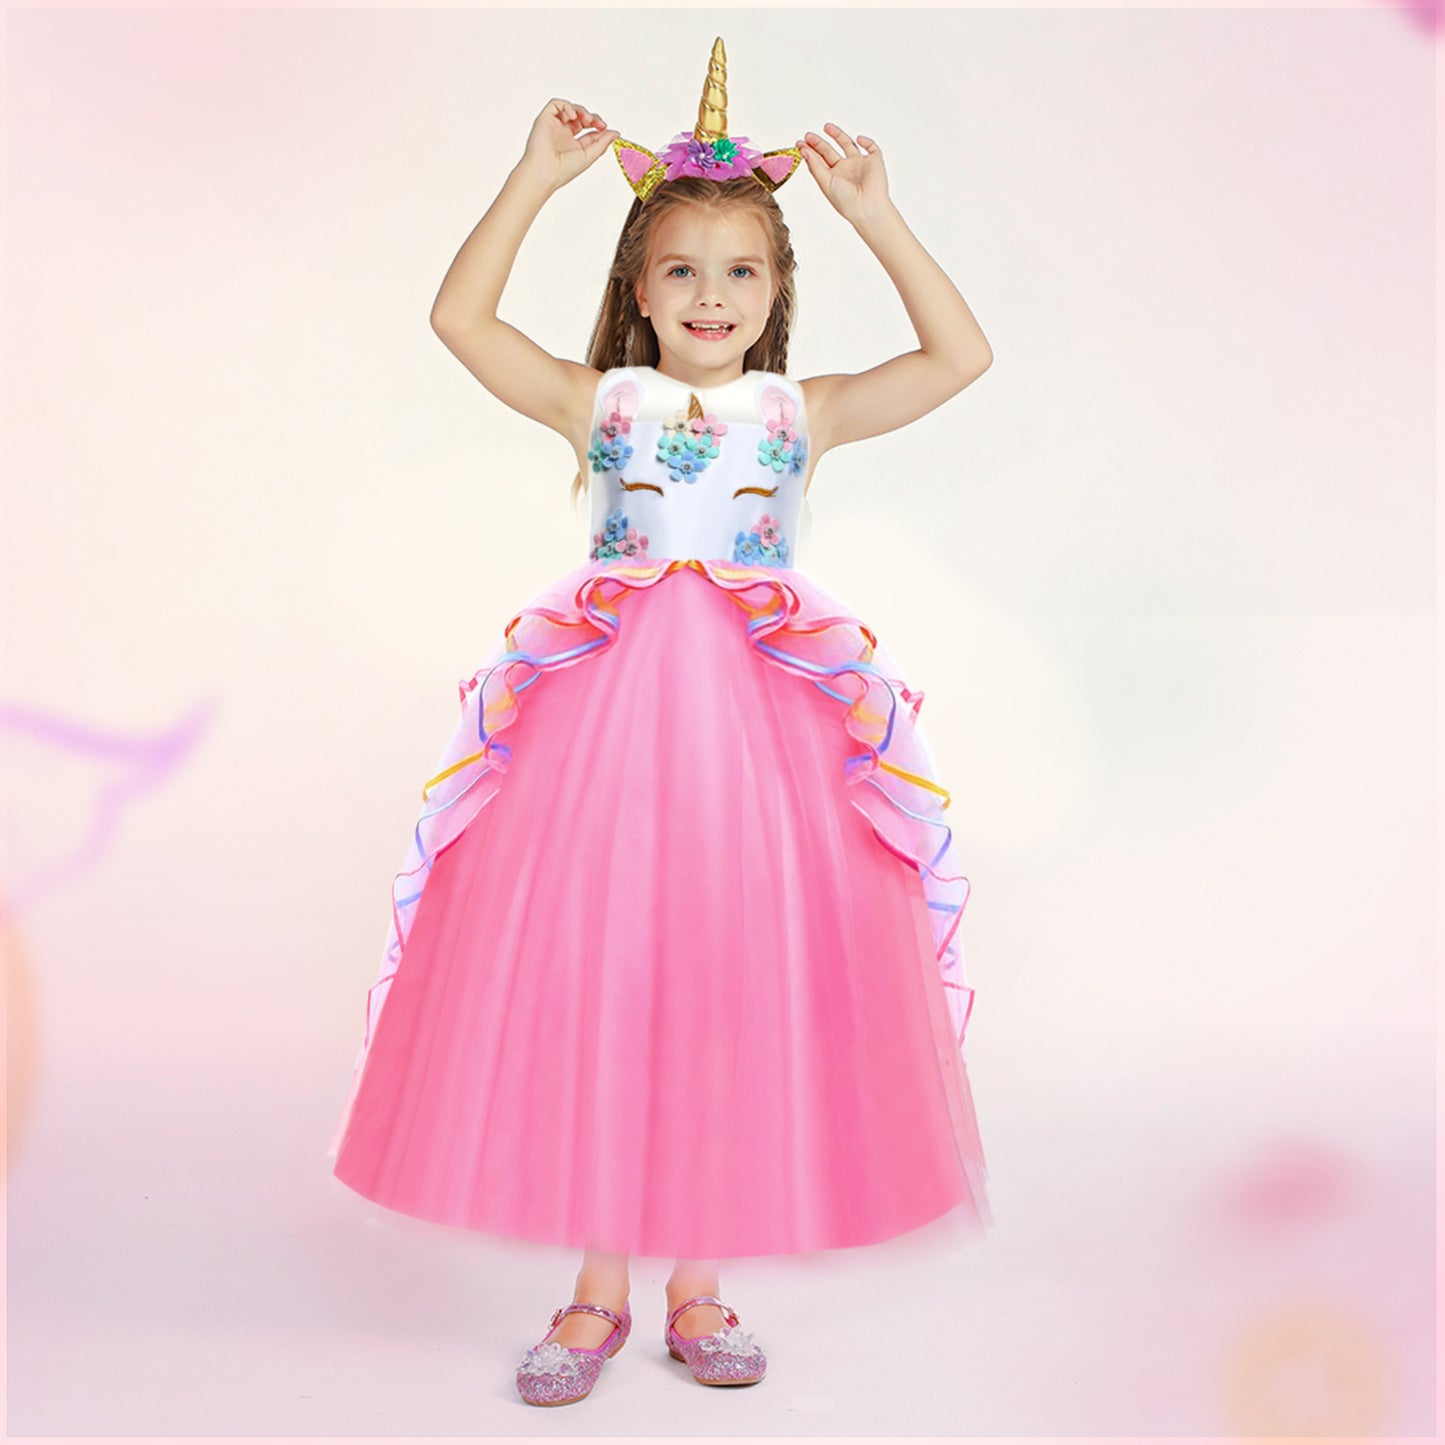 Foierp Girls Long Dress - Princess Dress Pink for 3-12 Years Old